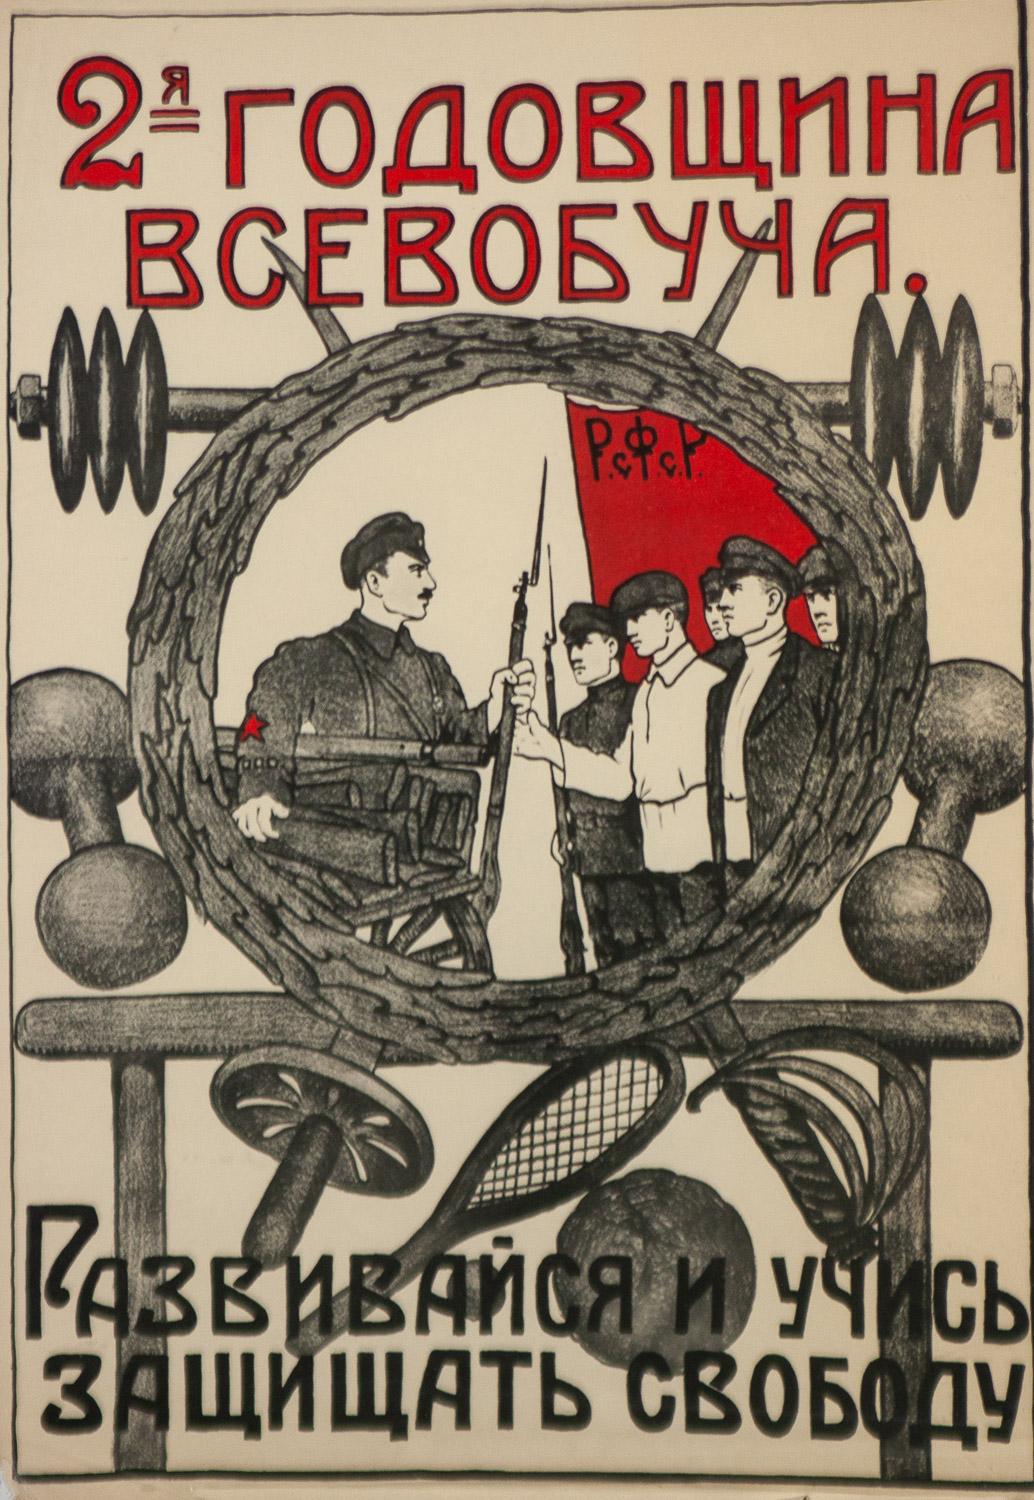 1920s propaganda posters